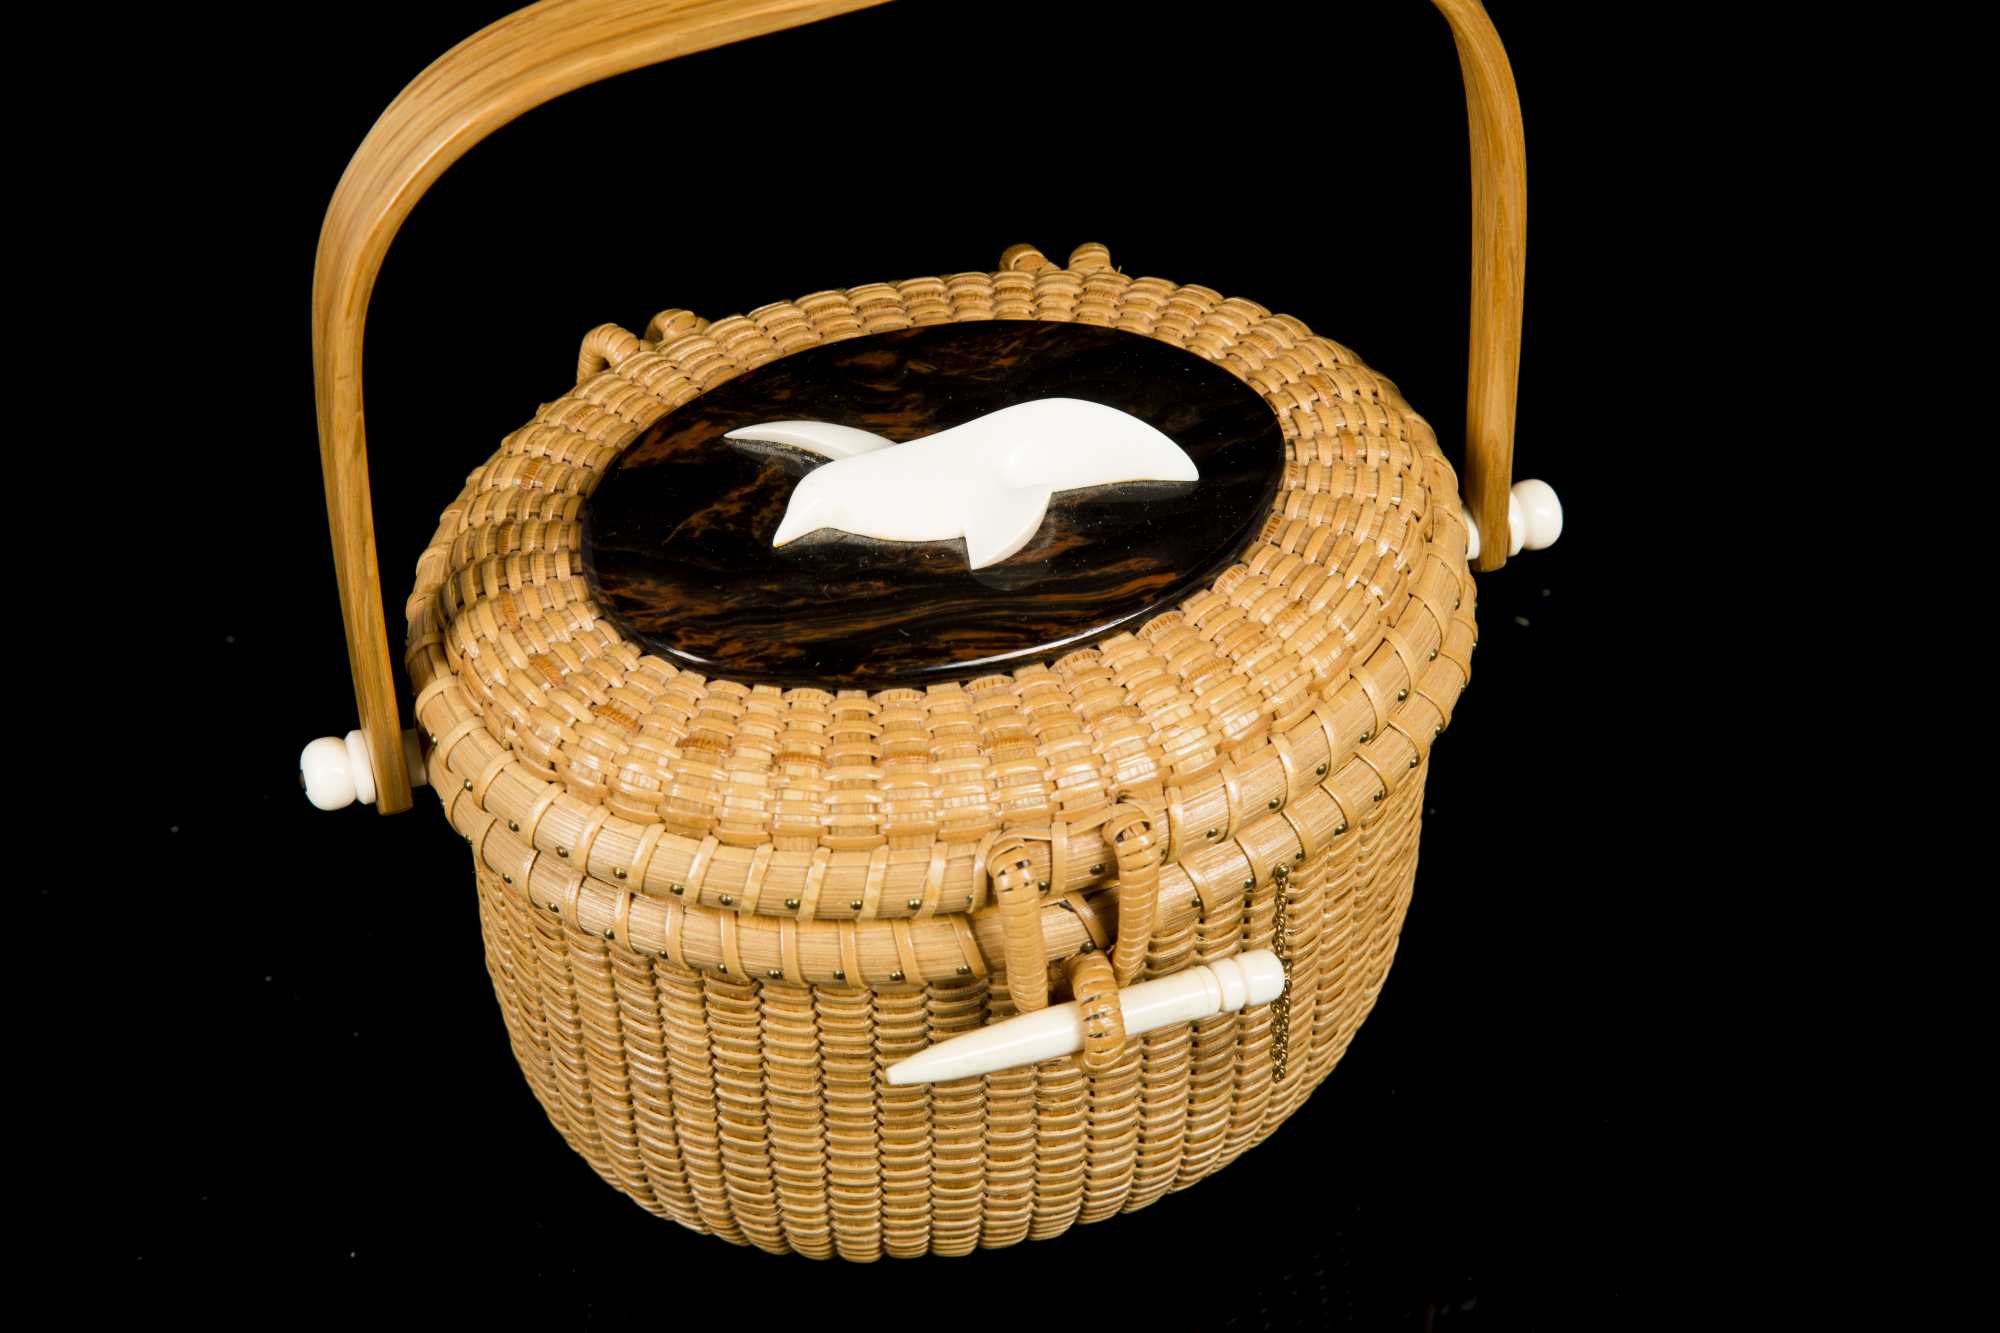 Nantucket Lightship baskets have interesting backstory | Real Estate |  chronicleonline.com